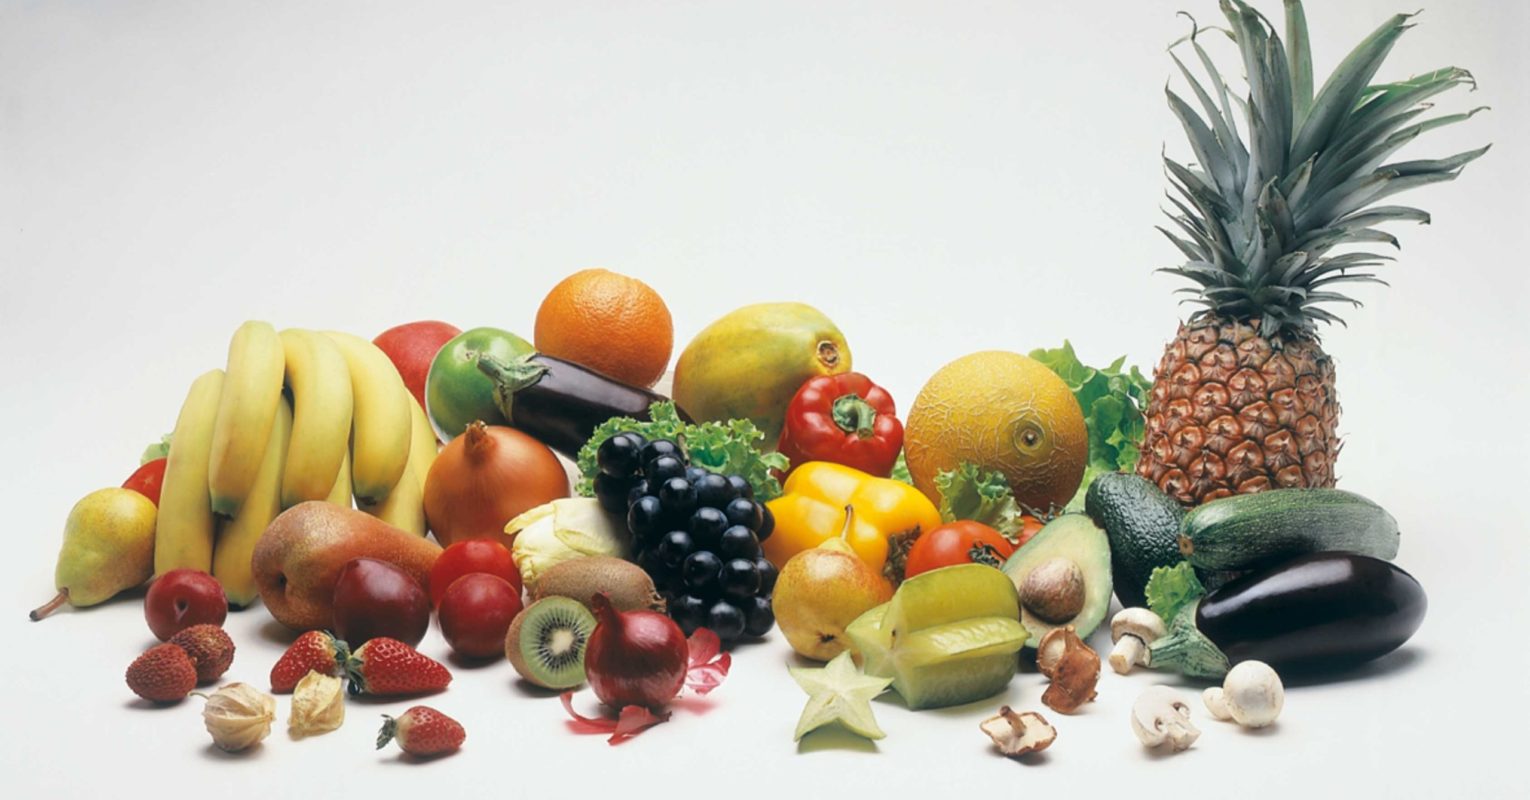 Qualität und Geschmack: Beim Kauf von Obst und Gemüse besonders wichtig!